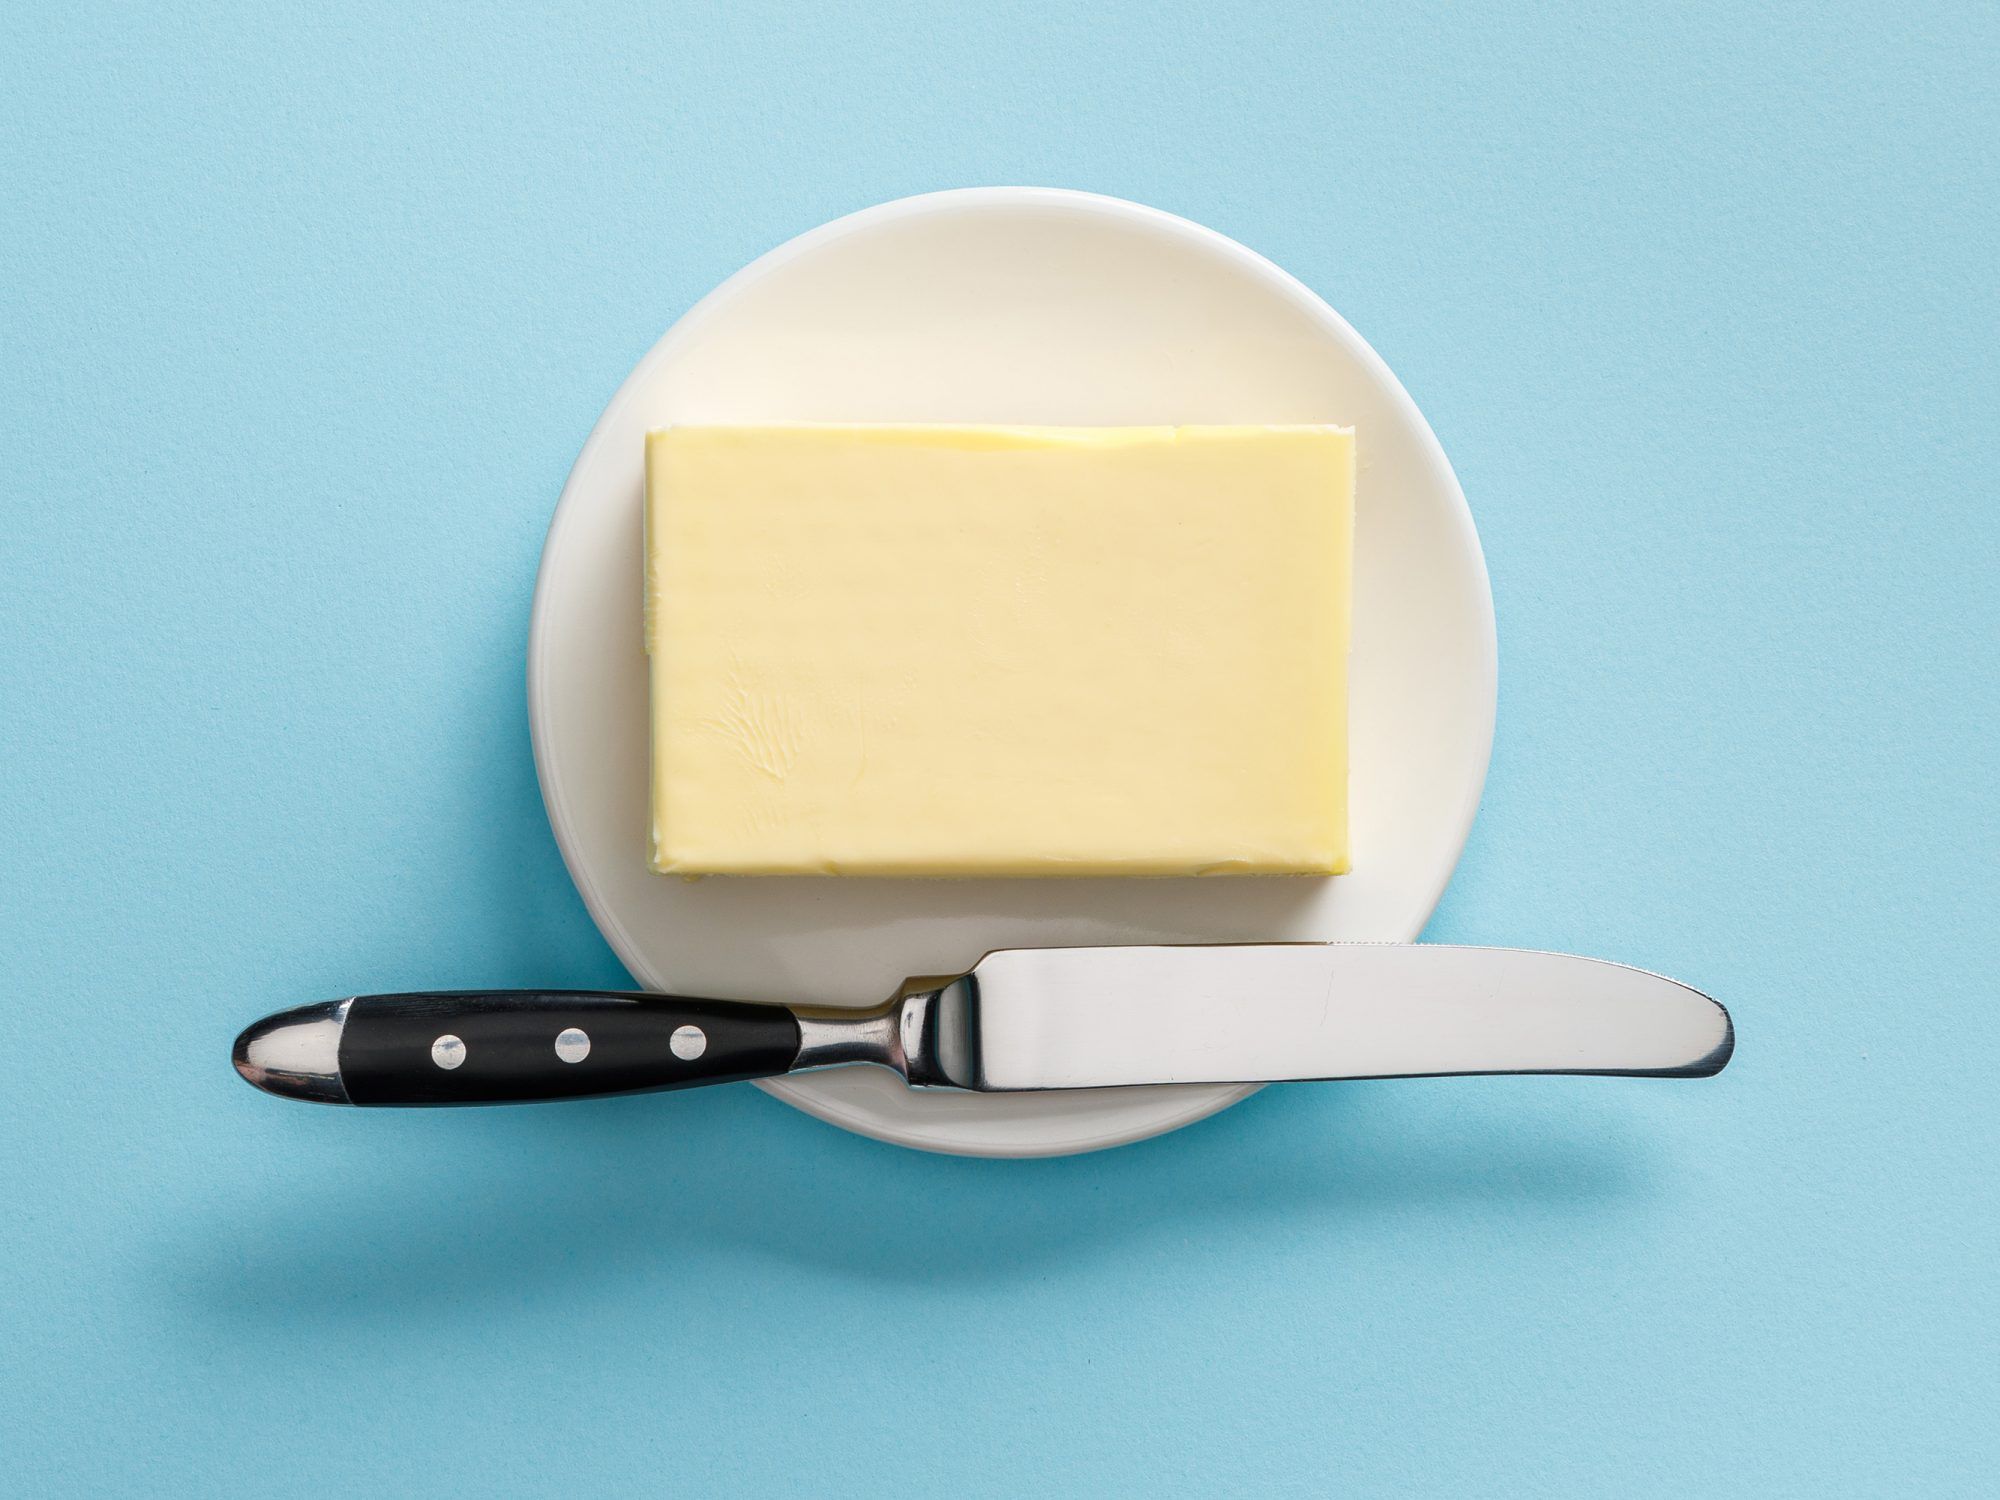 A manteiga não é um superalimento, mas tem algum valor nutricional? Perguntamos aos RDs